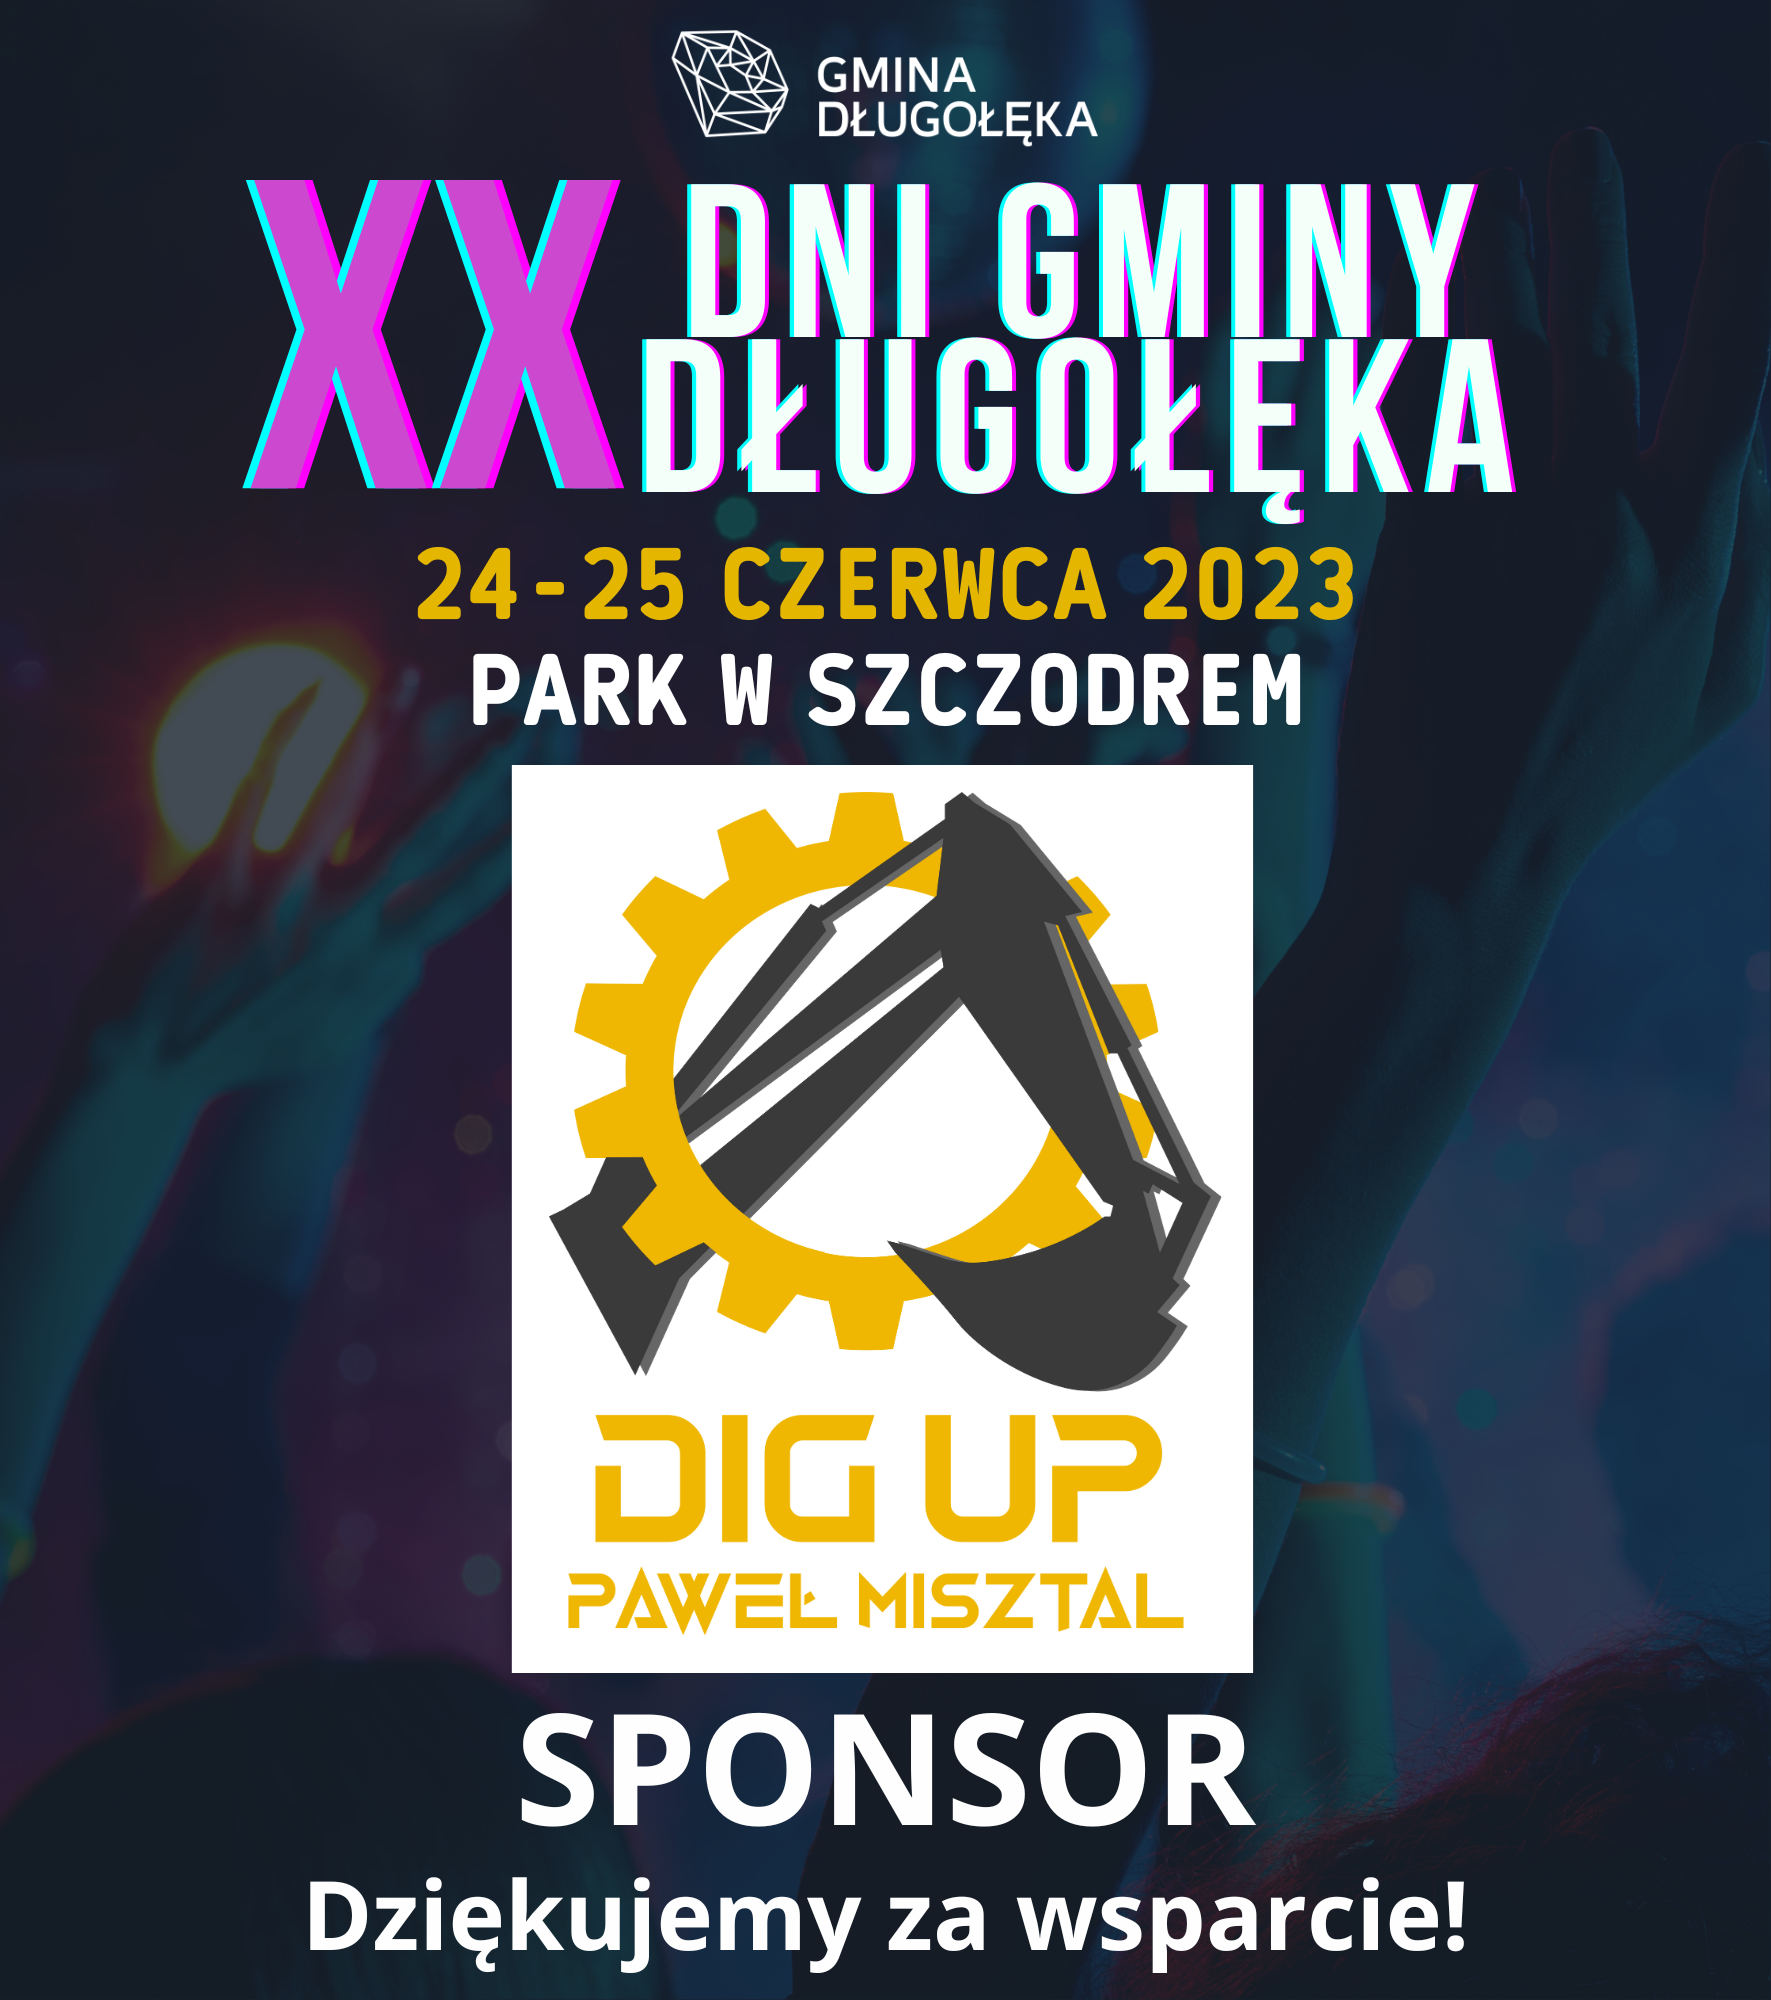 DIG UP Paweł Misztal sponsorem XX Dni Gminy Długołęka